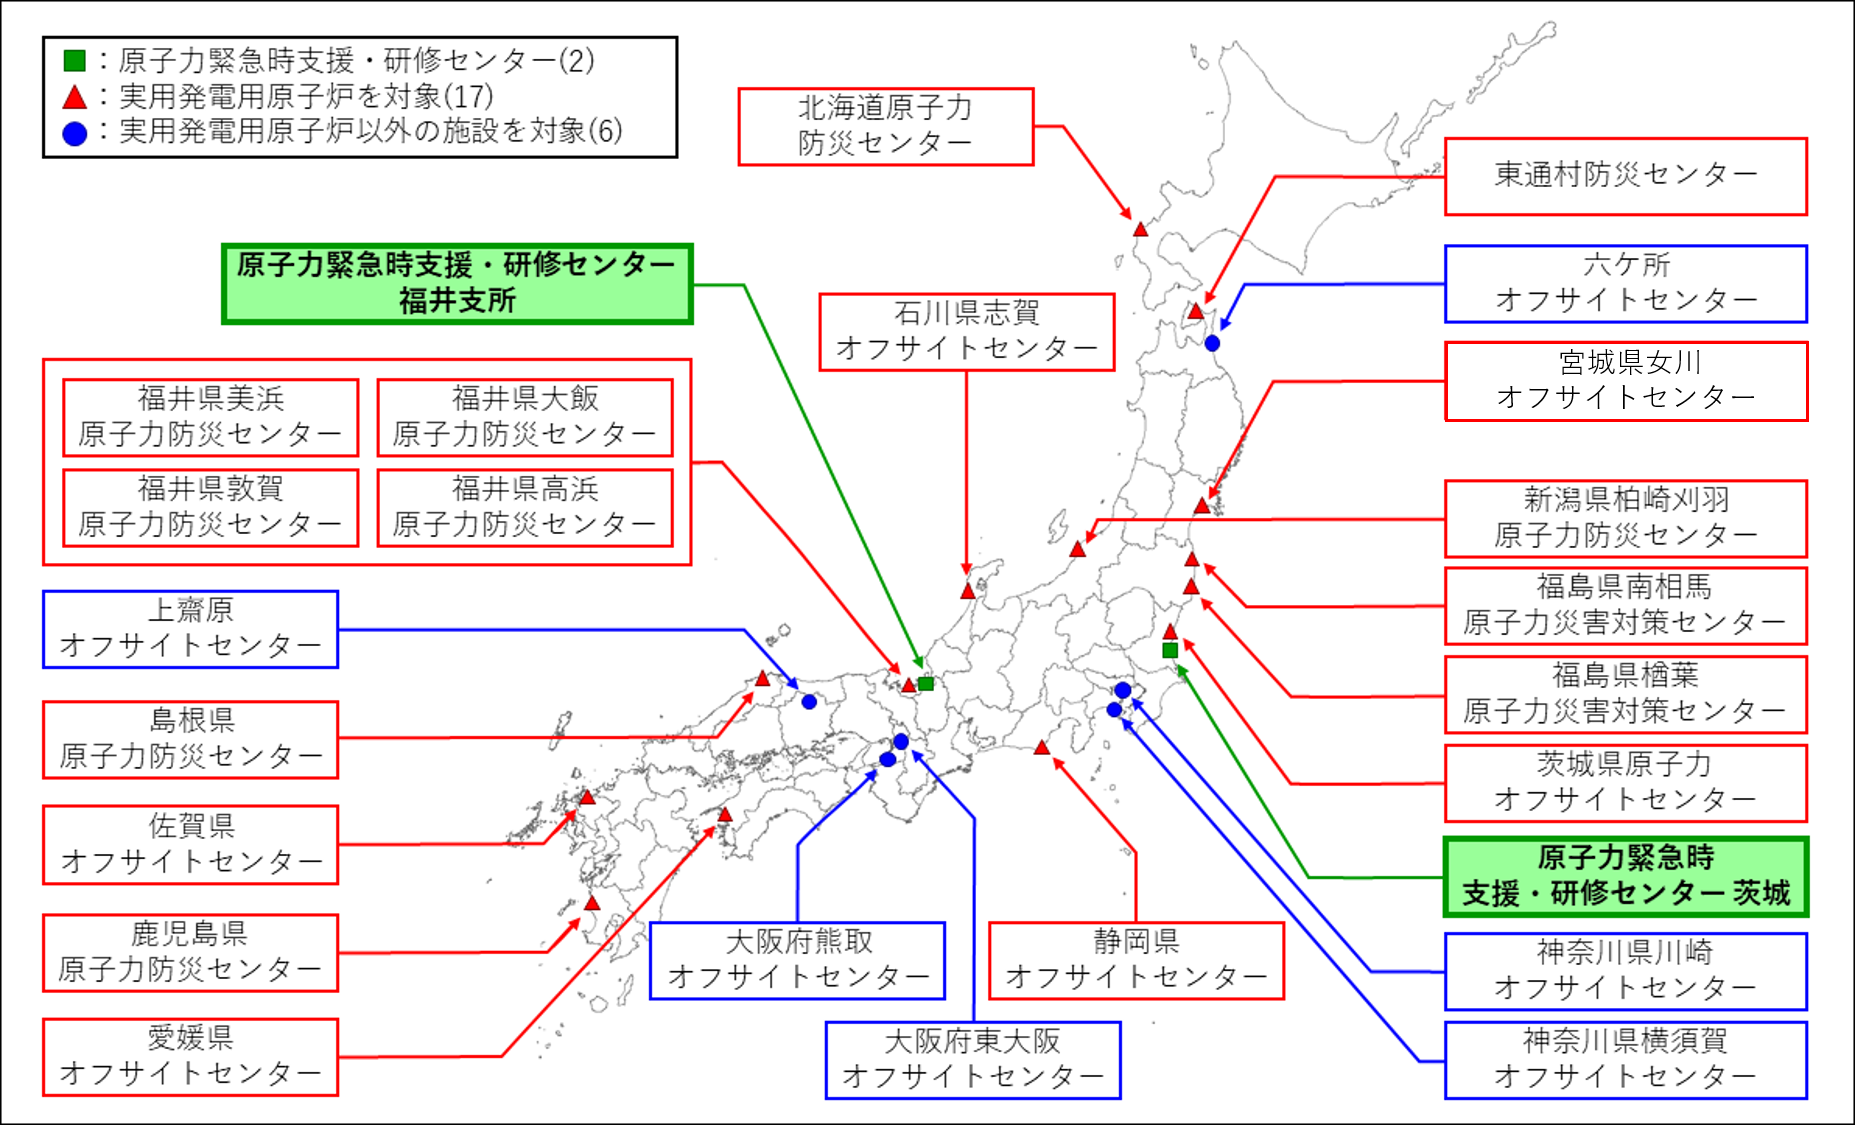 日本におけると支援・研修センターとオフサイトセンターの地図